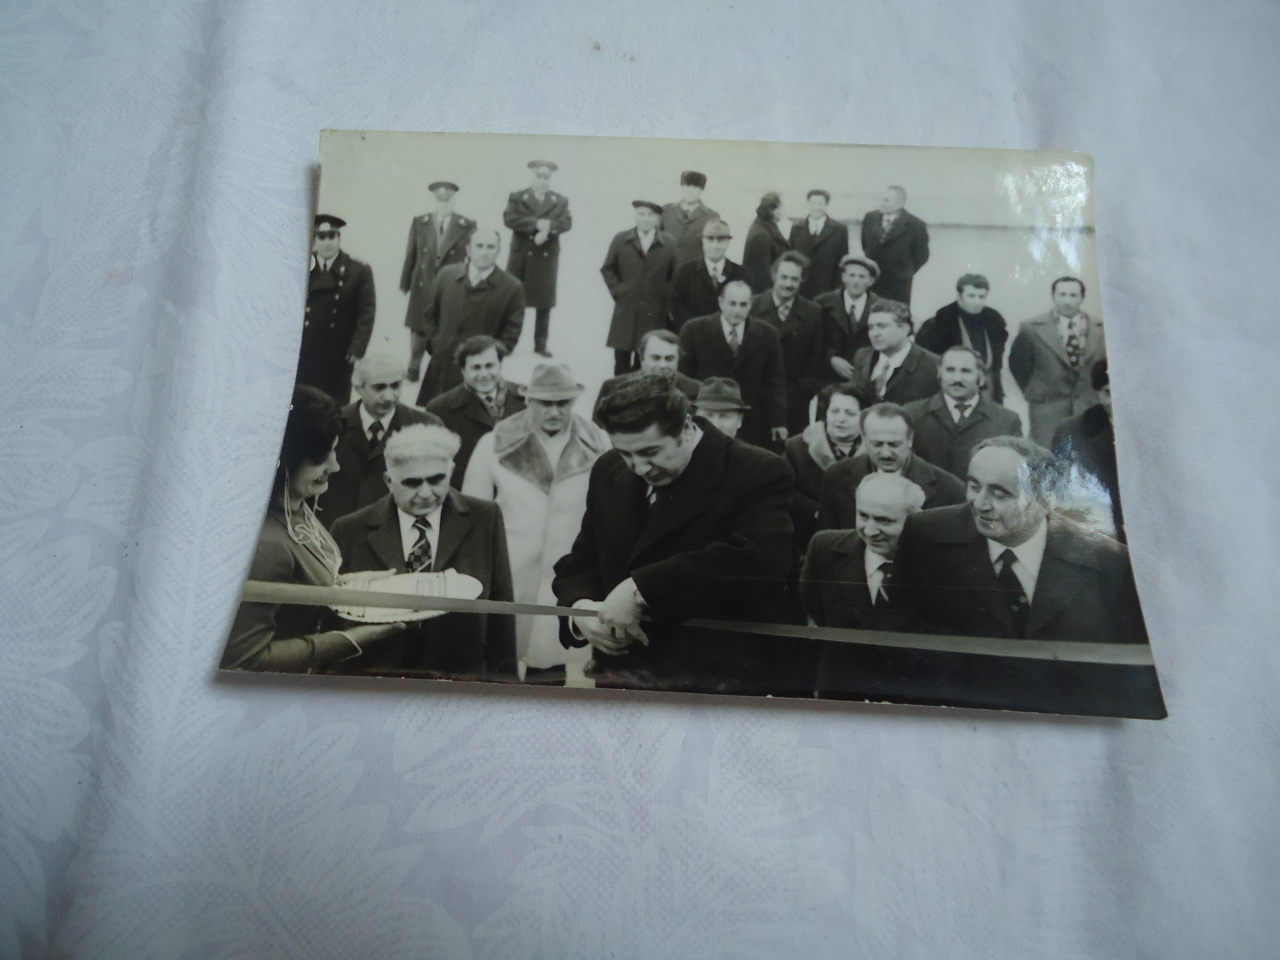 լուսանկար՝ ՀԿԿ կենտկոմի առաջին քարտուղար Կ․Ս․ Դեմիրճյանը ՀՍՍՀ մինիստորների խորհրդի նախագահ Ֆ․Սարգսյանը և ՀԿԿ Ստեփանավանի շրջկոմի առաջին քարտուղար Վ․Բալայանը 